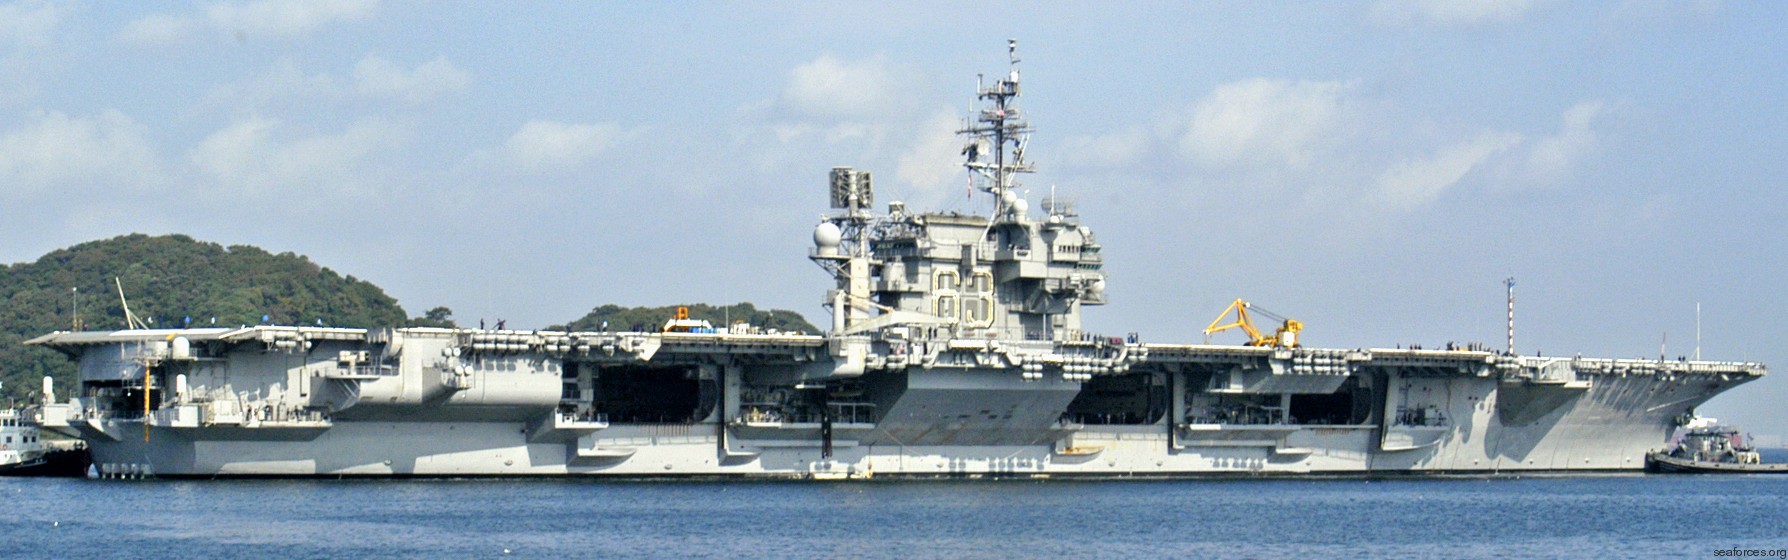 cv-63 uss kitty hawk aircraft carrier us navy fleet activities yokosuka japan